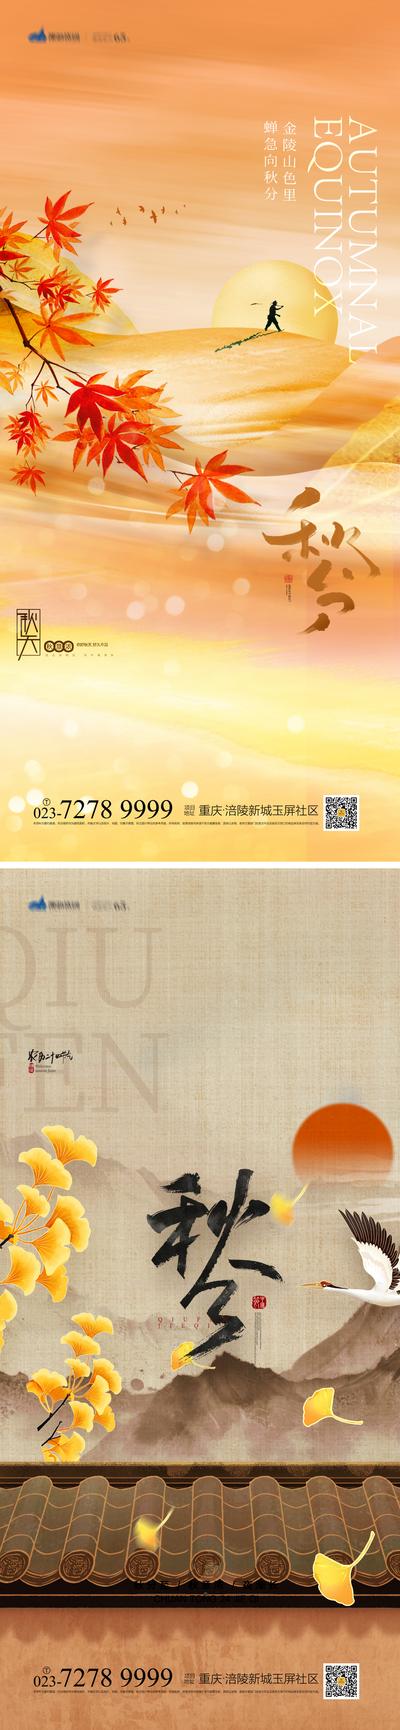 南门网 秋分节气系列海报